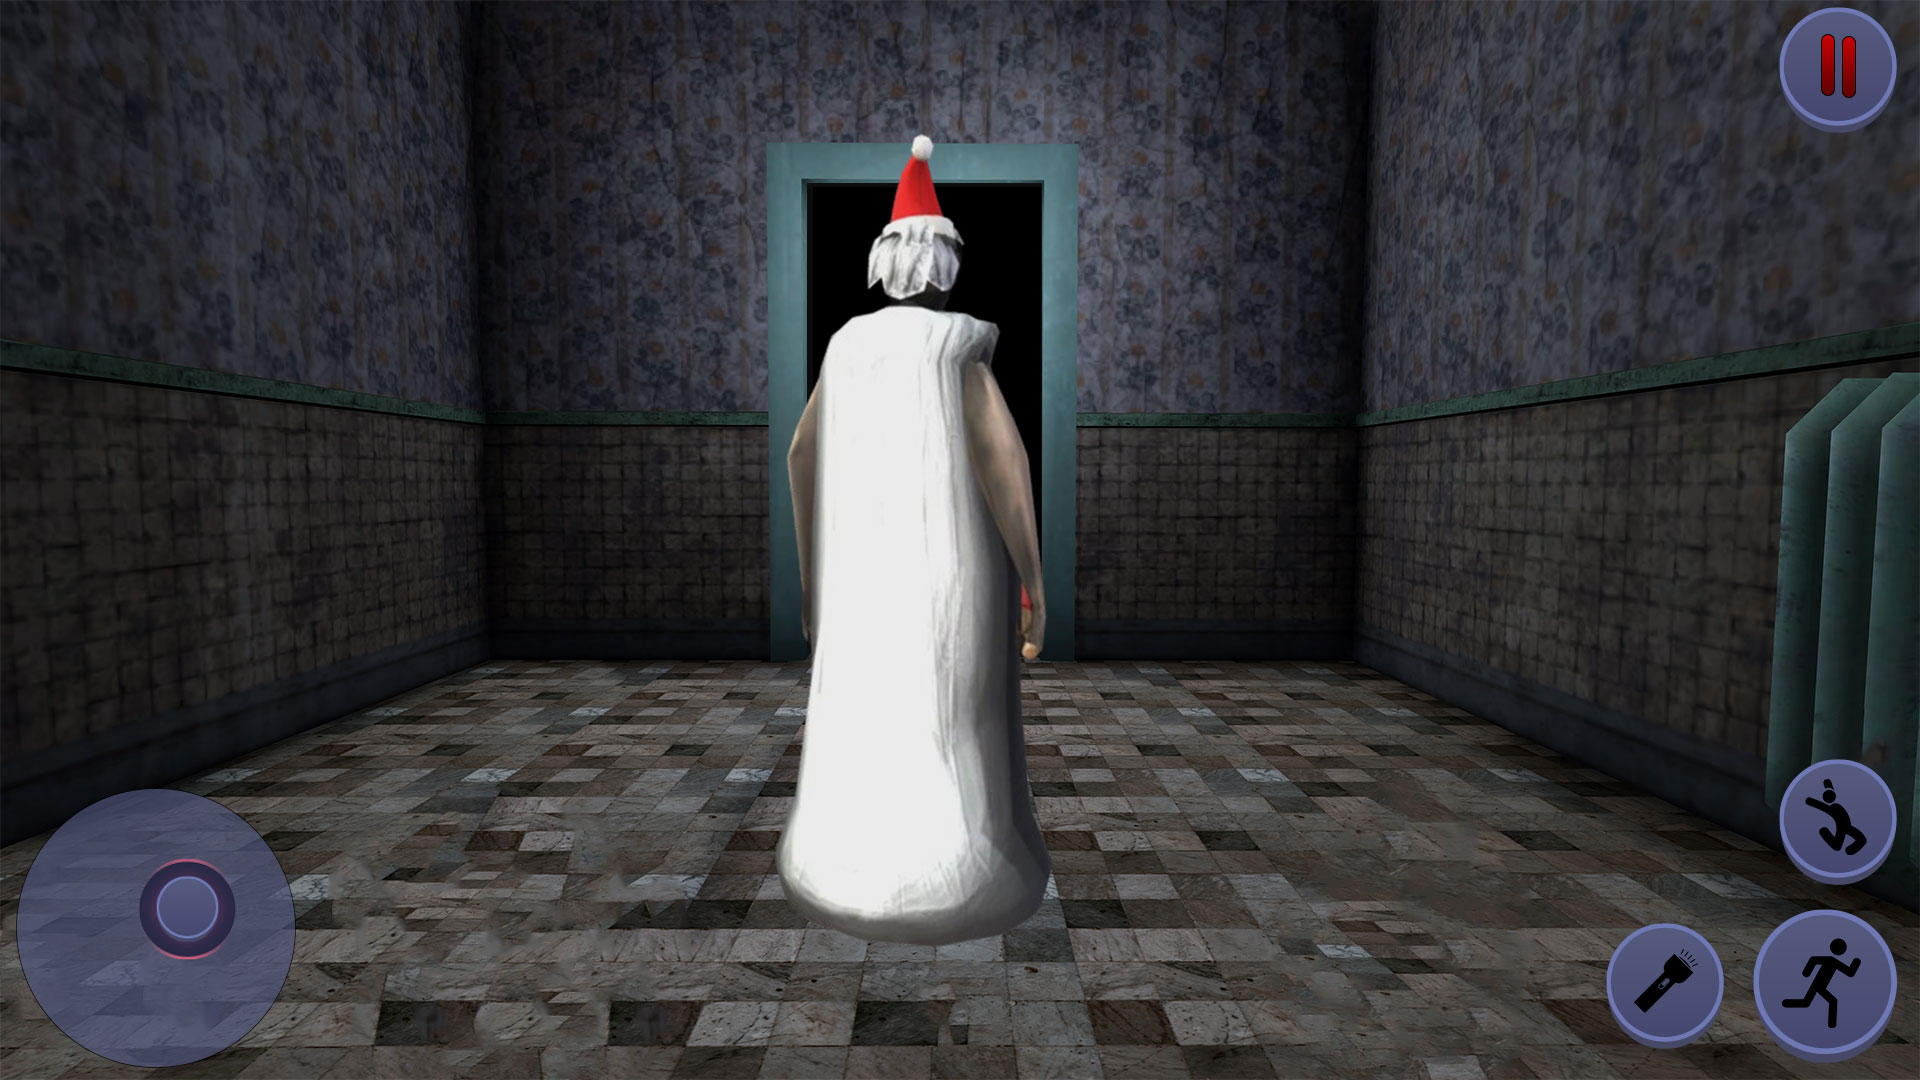 Screenshot 1 of Grandma Hospital Horror Game 1.0.2